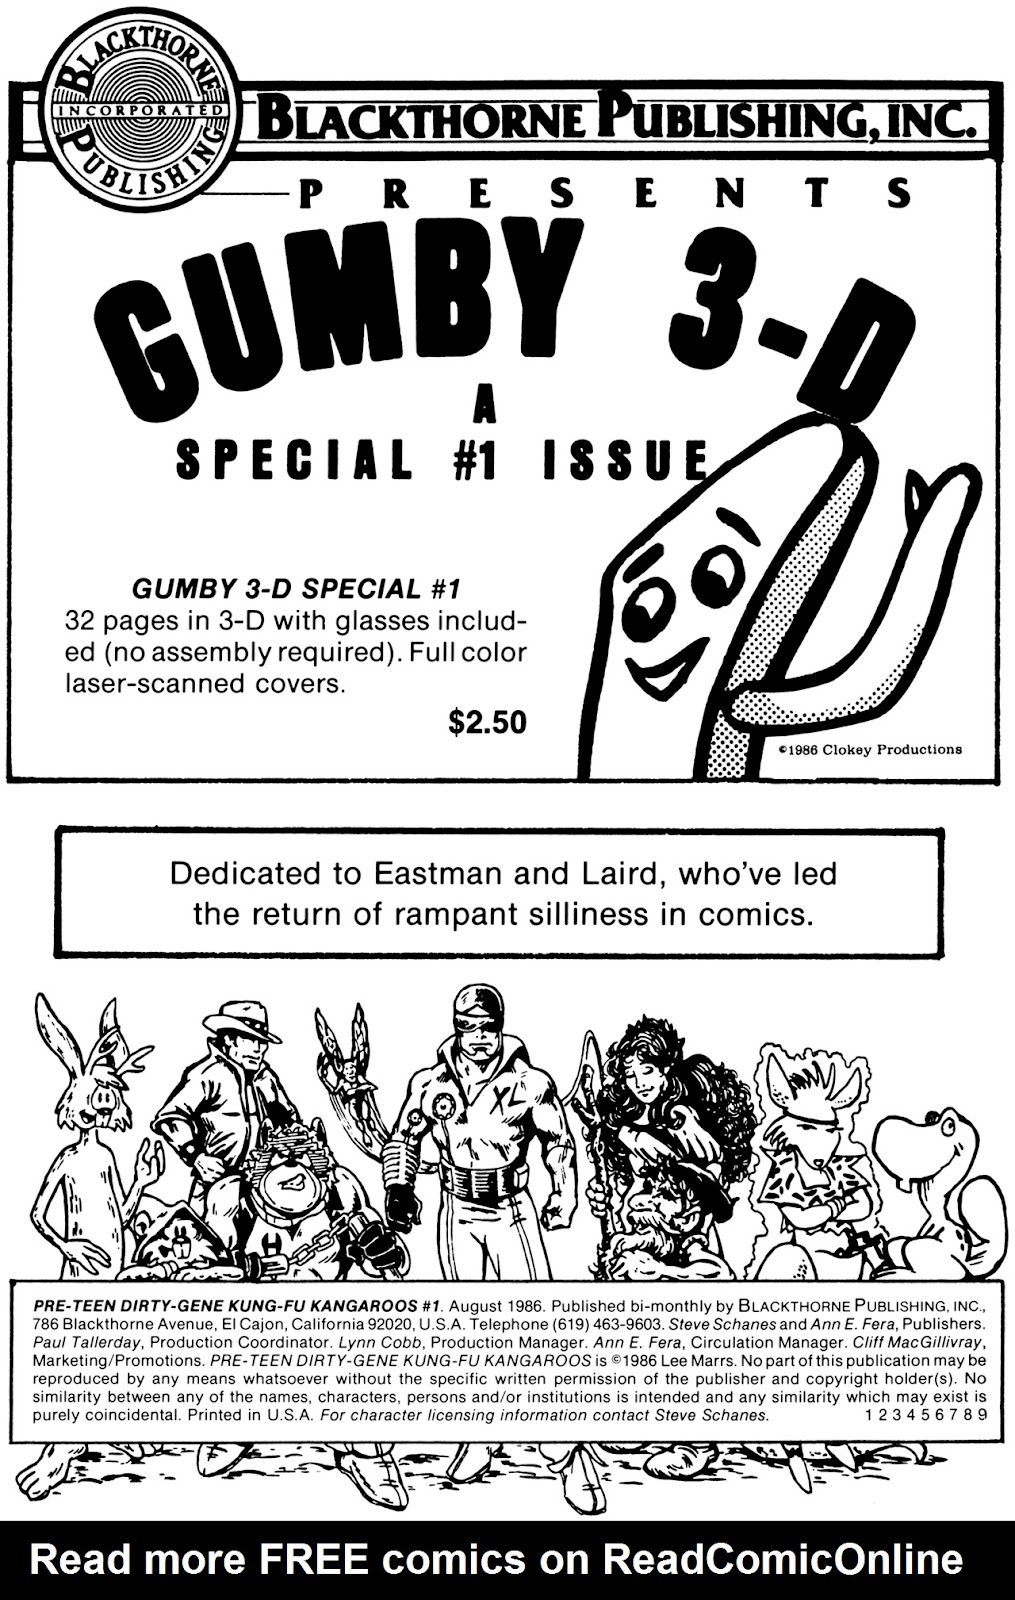 Pre-Teen Dirty-Gene Kung-Fu Kangaroos issue 1 - Page 2